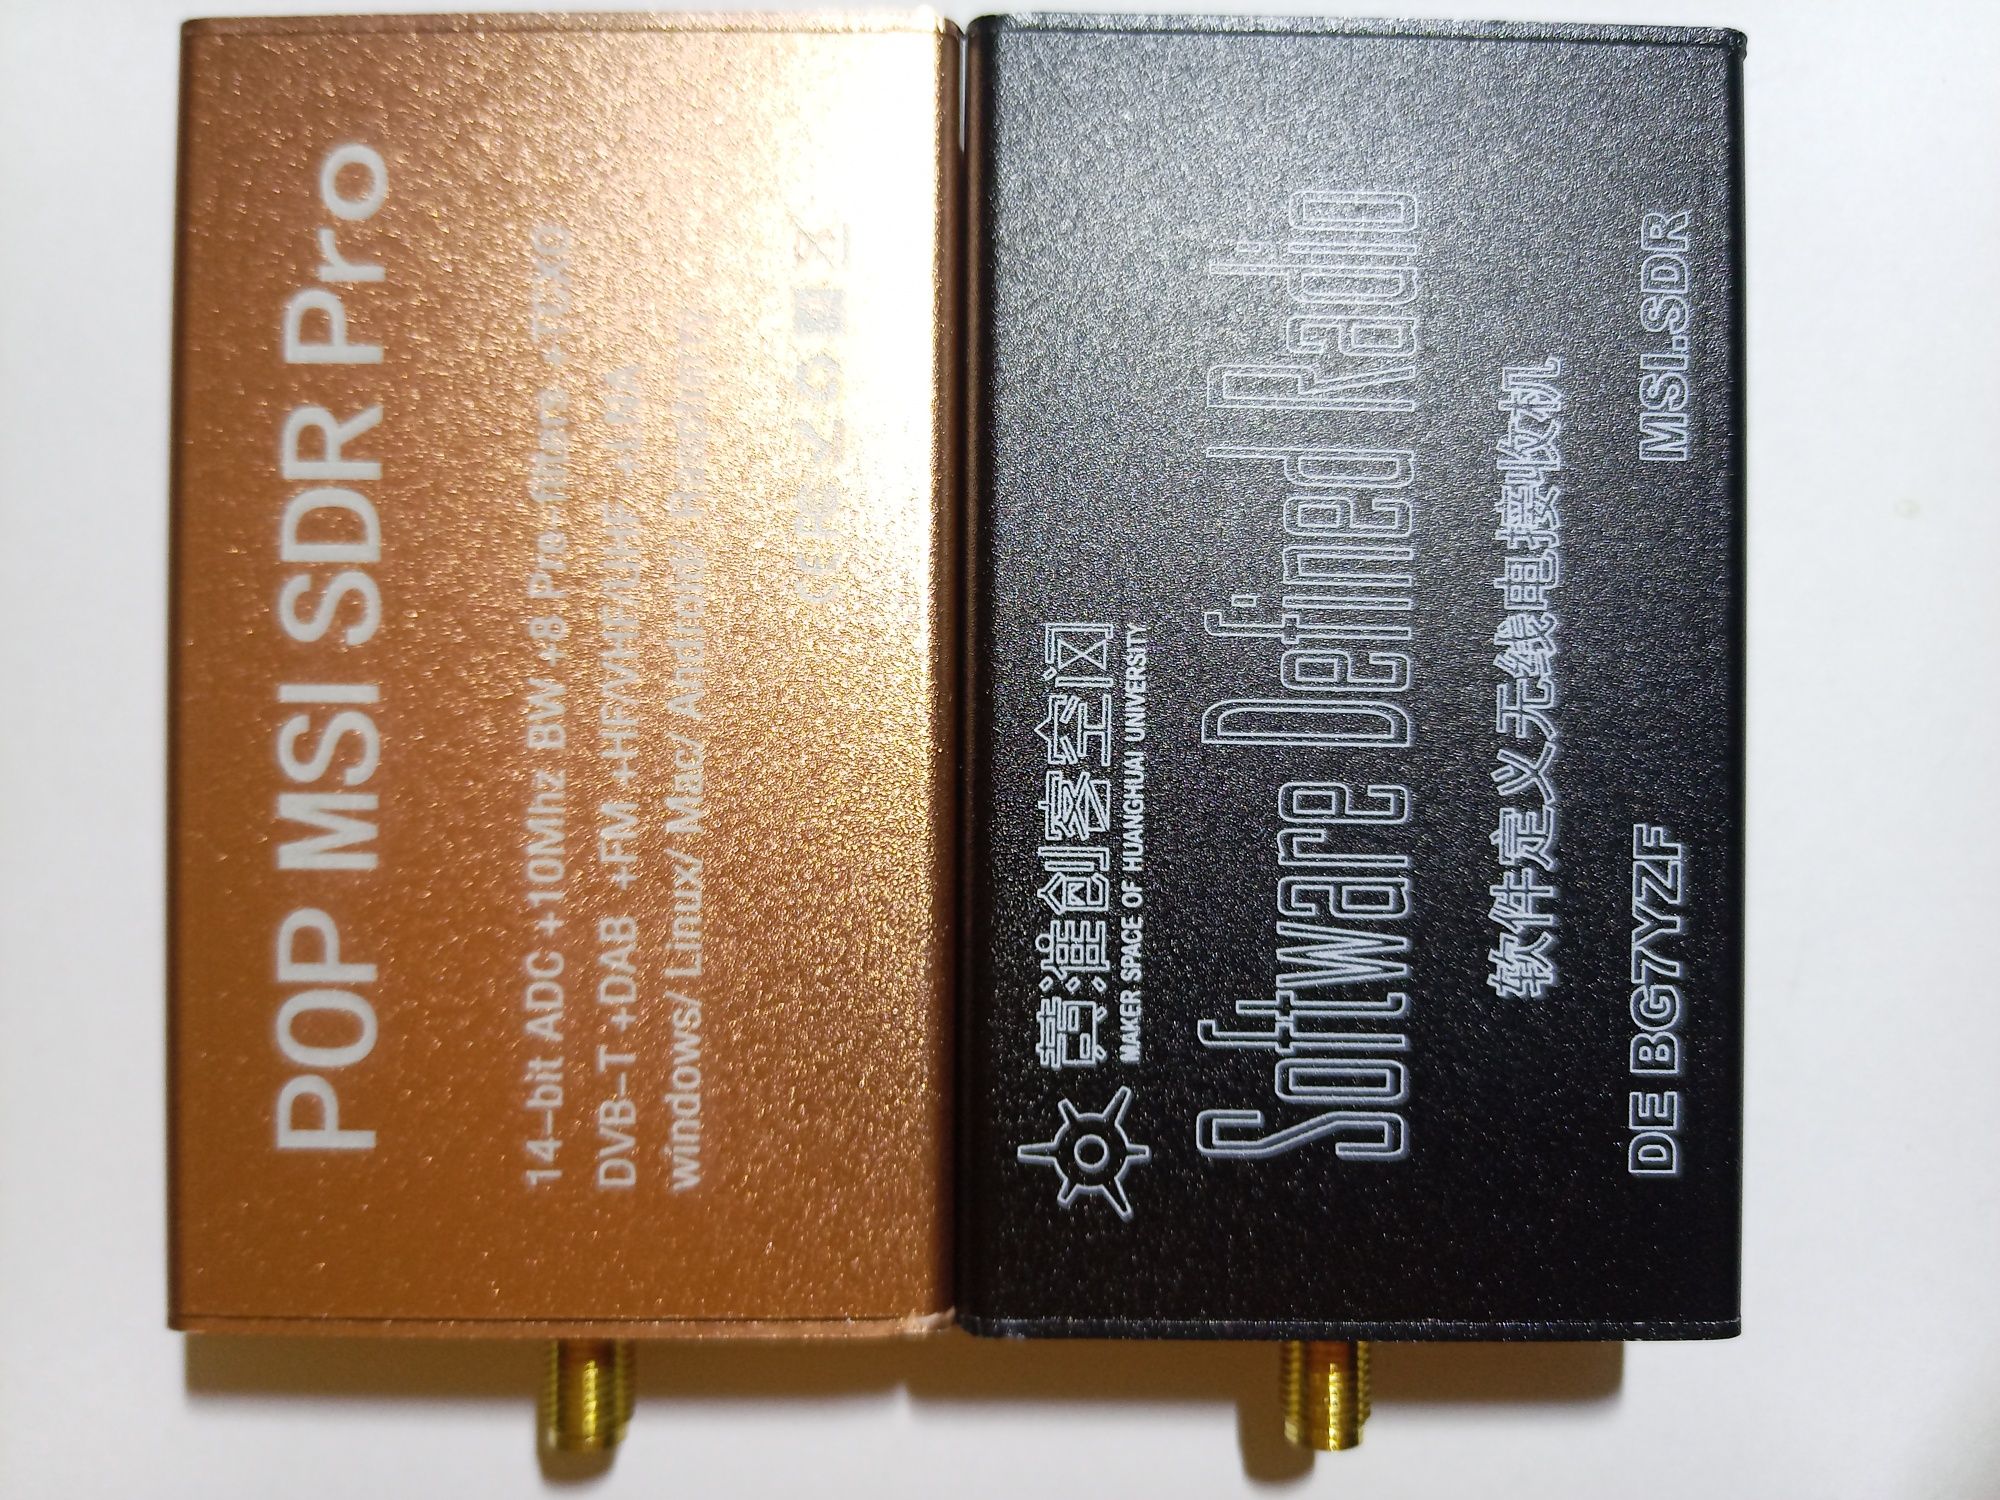 DSP SDR приймач RSP1 діап 10кГц – 2ГГц MSI2500. Автоматичнi фiльтри